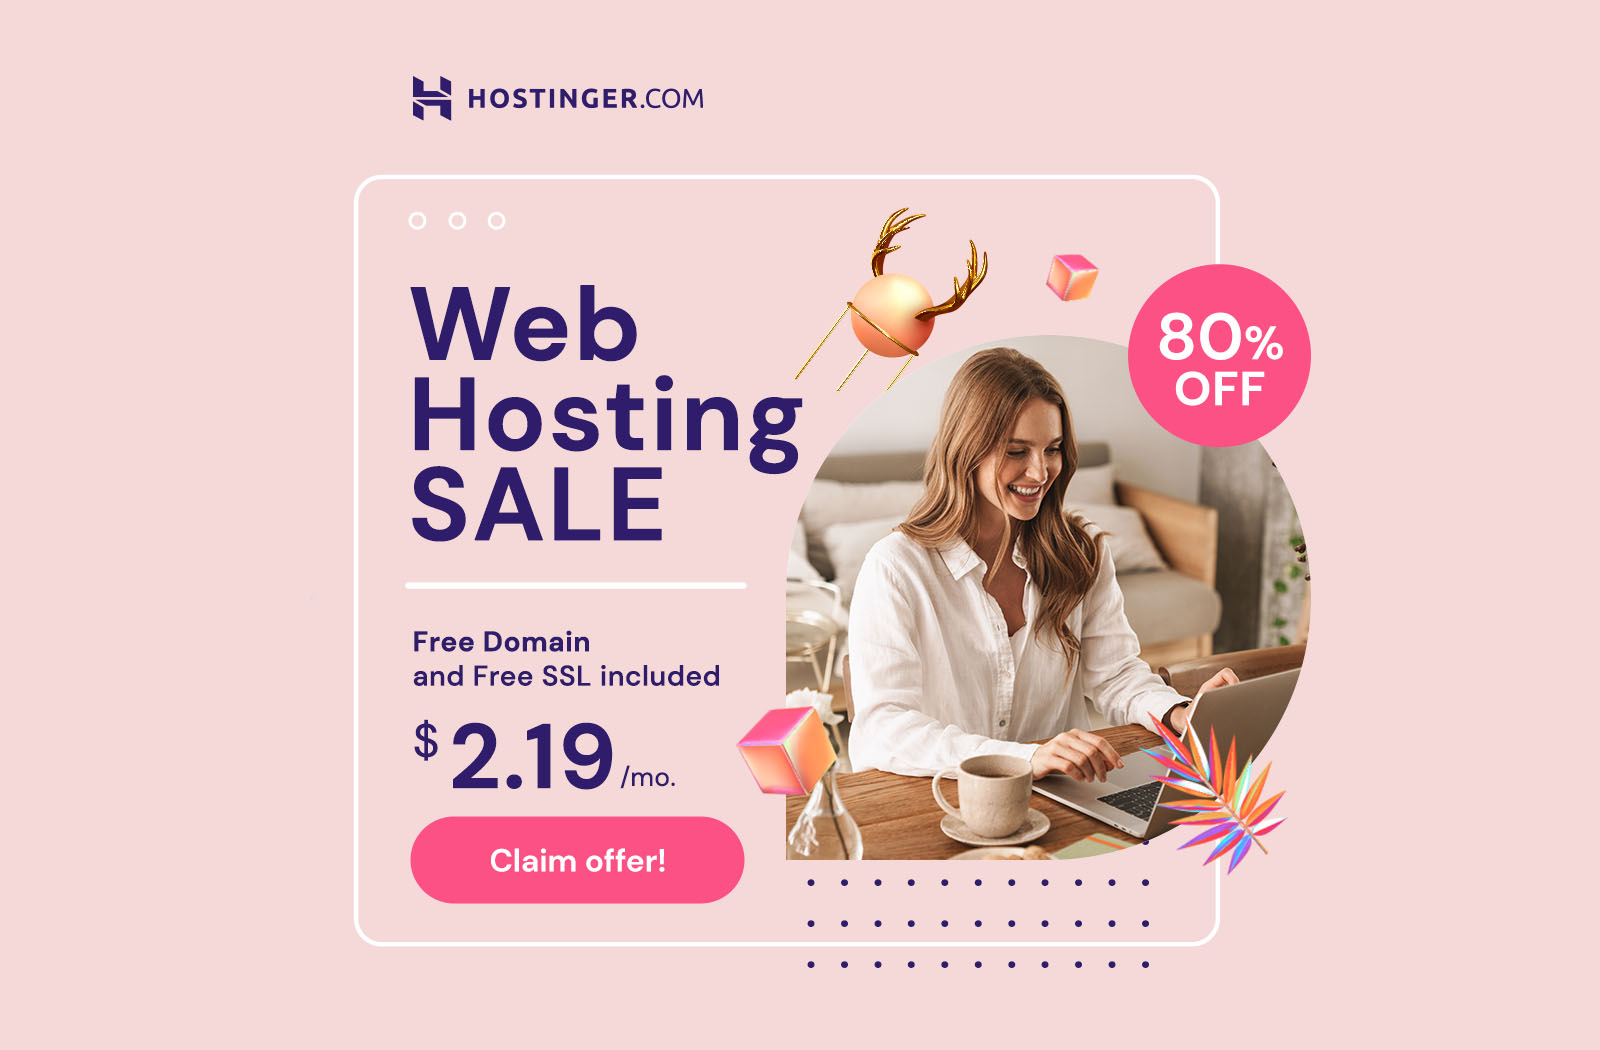 Hostinger Web Hosting Service